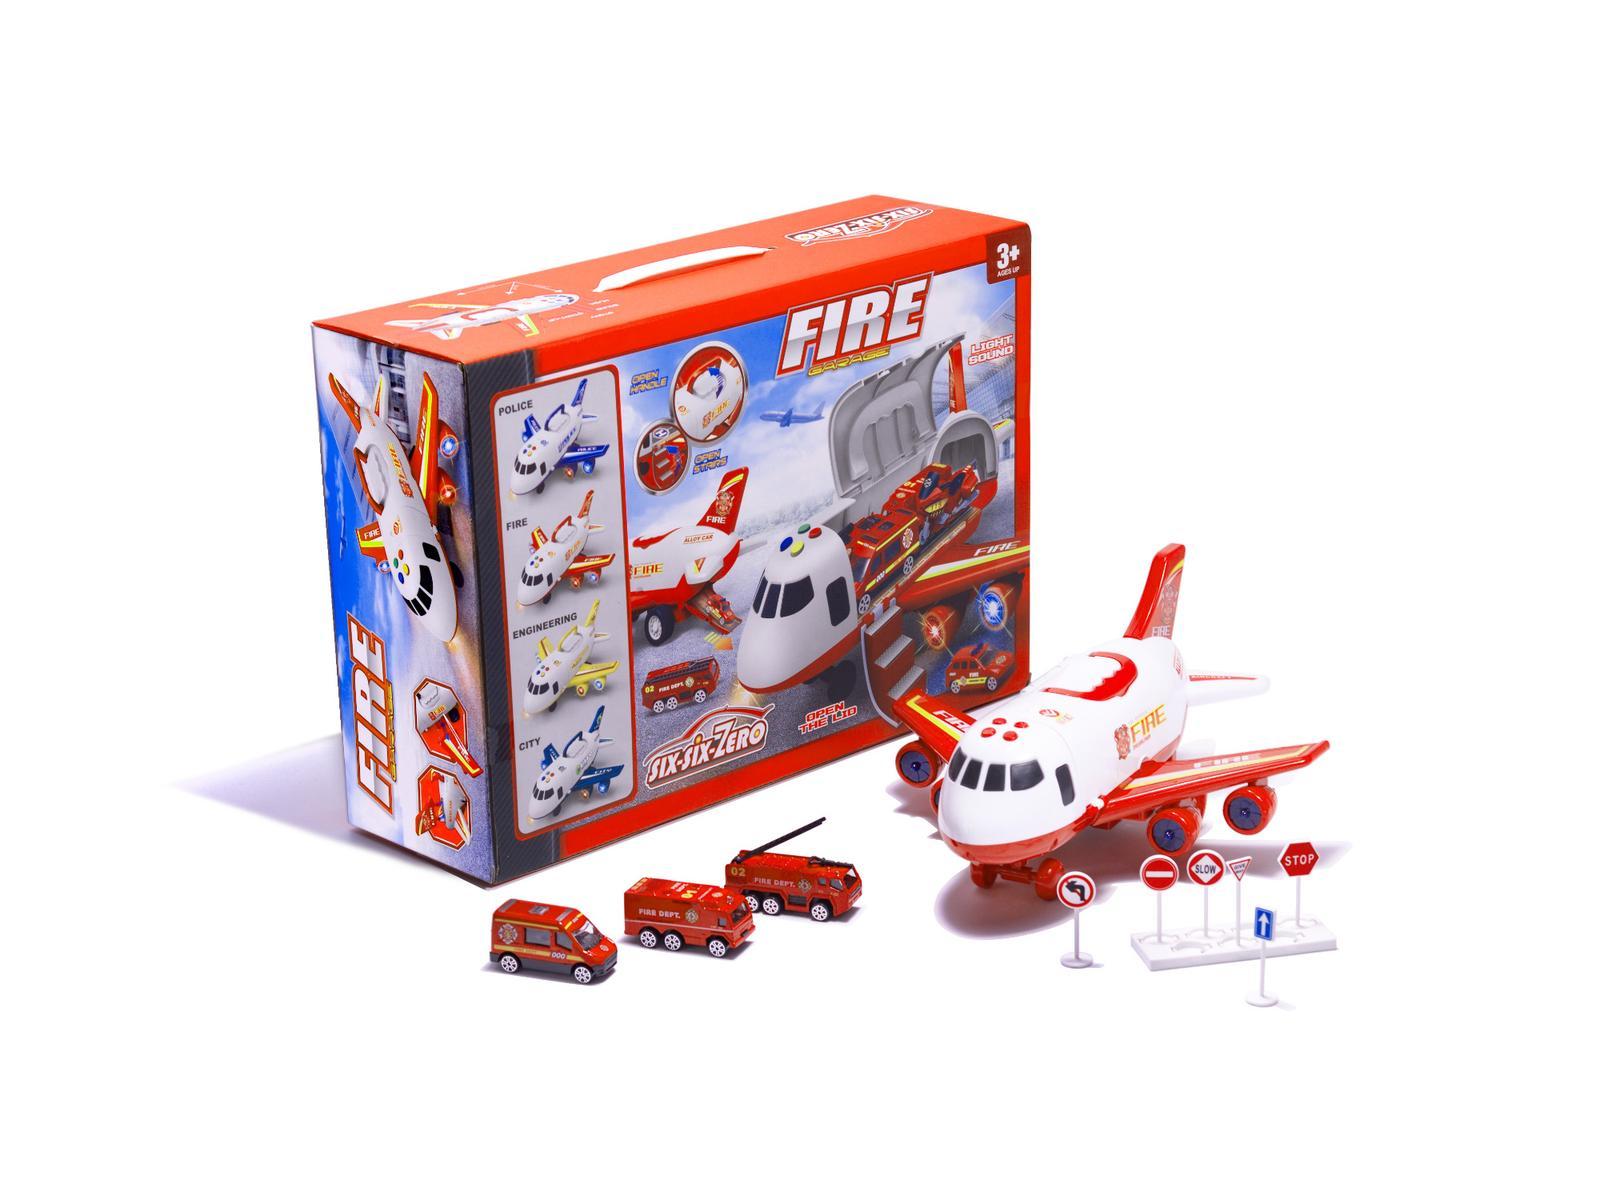 Transporter samolot + 3 pojazdy straż pożarna zabawka dla dzieci czerwona 41,5x31,5x14 cm nr. 8